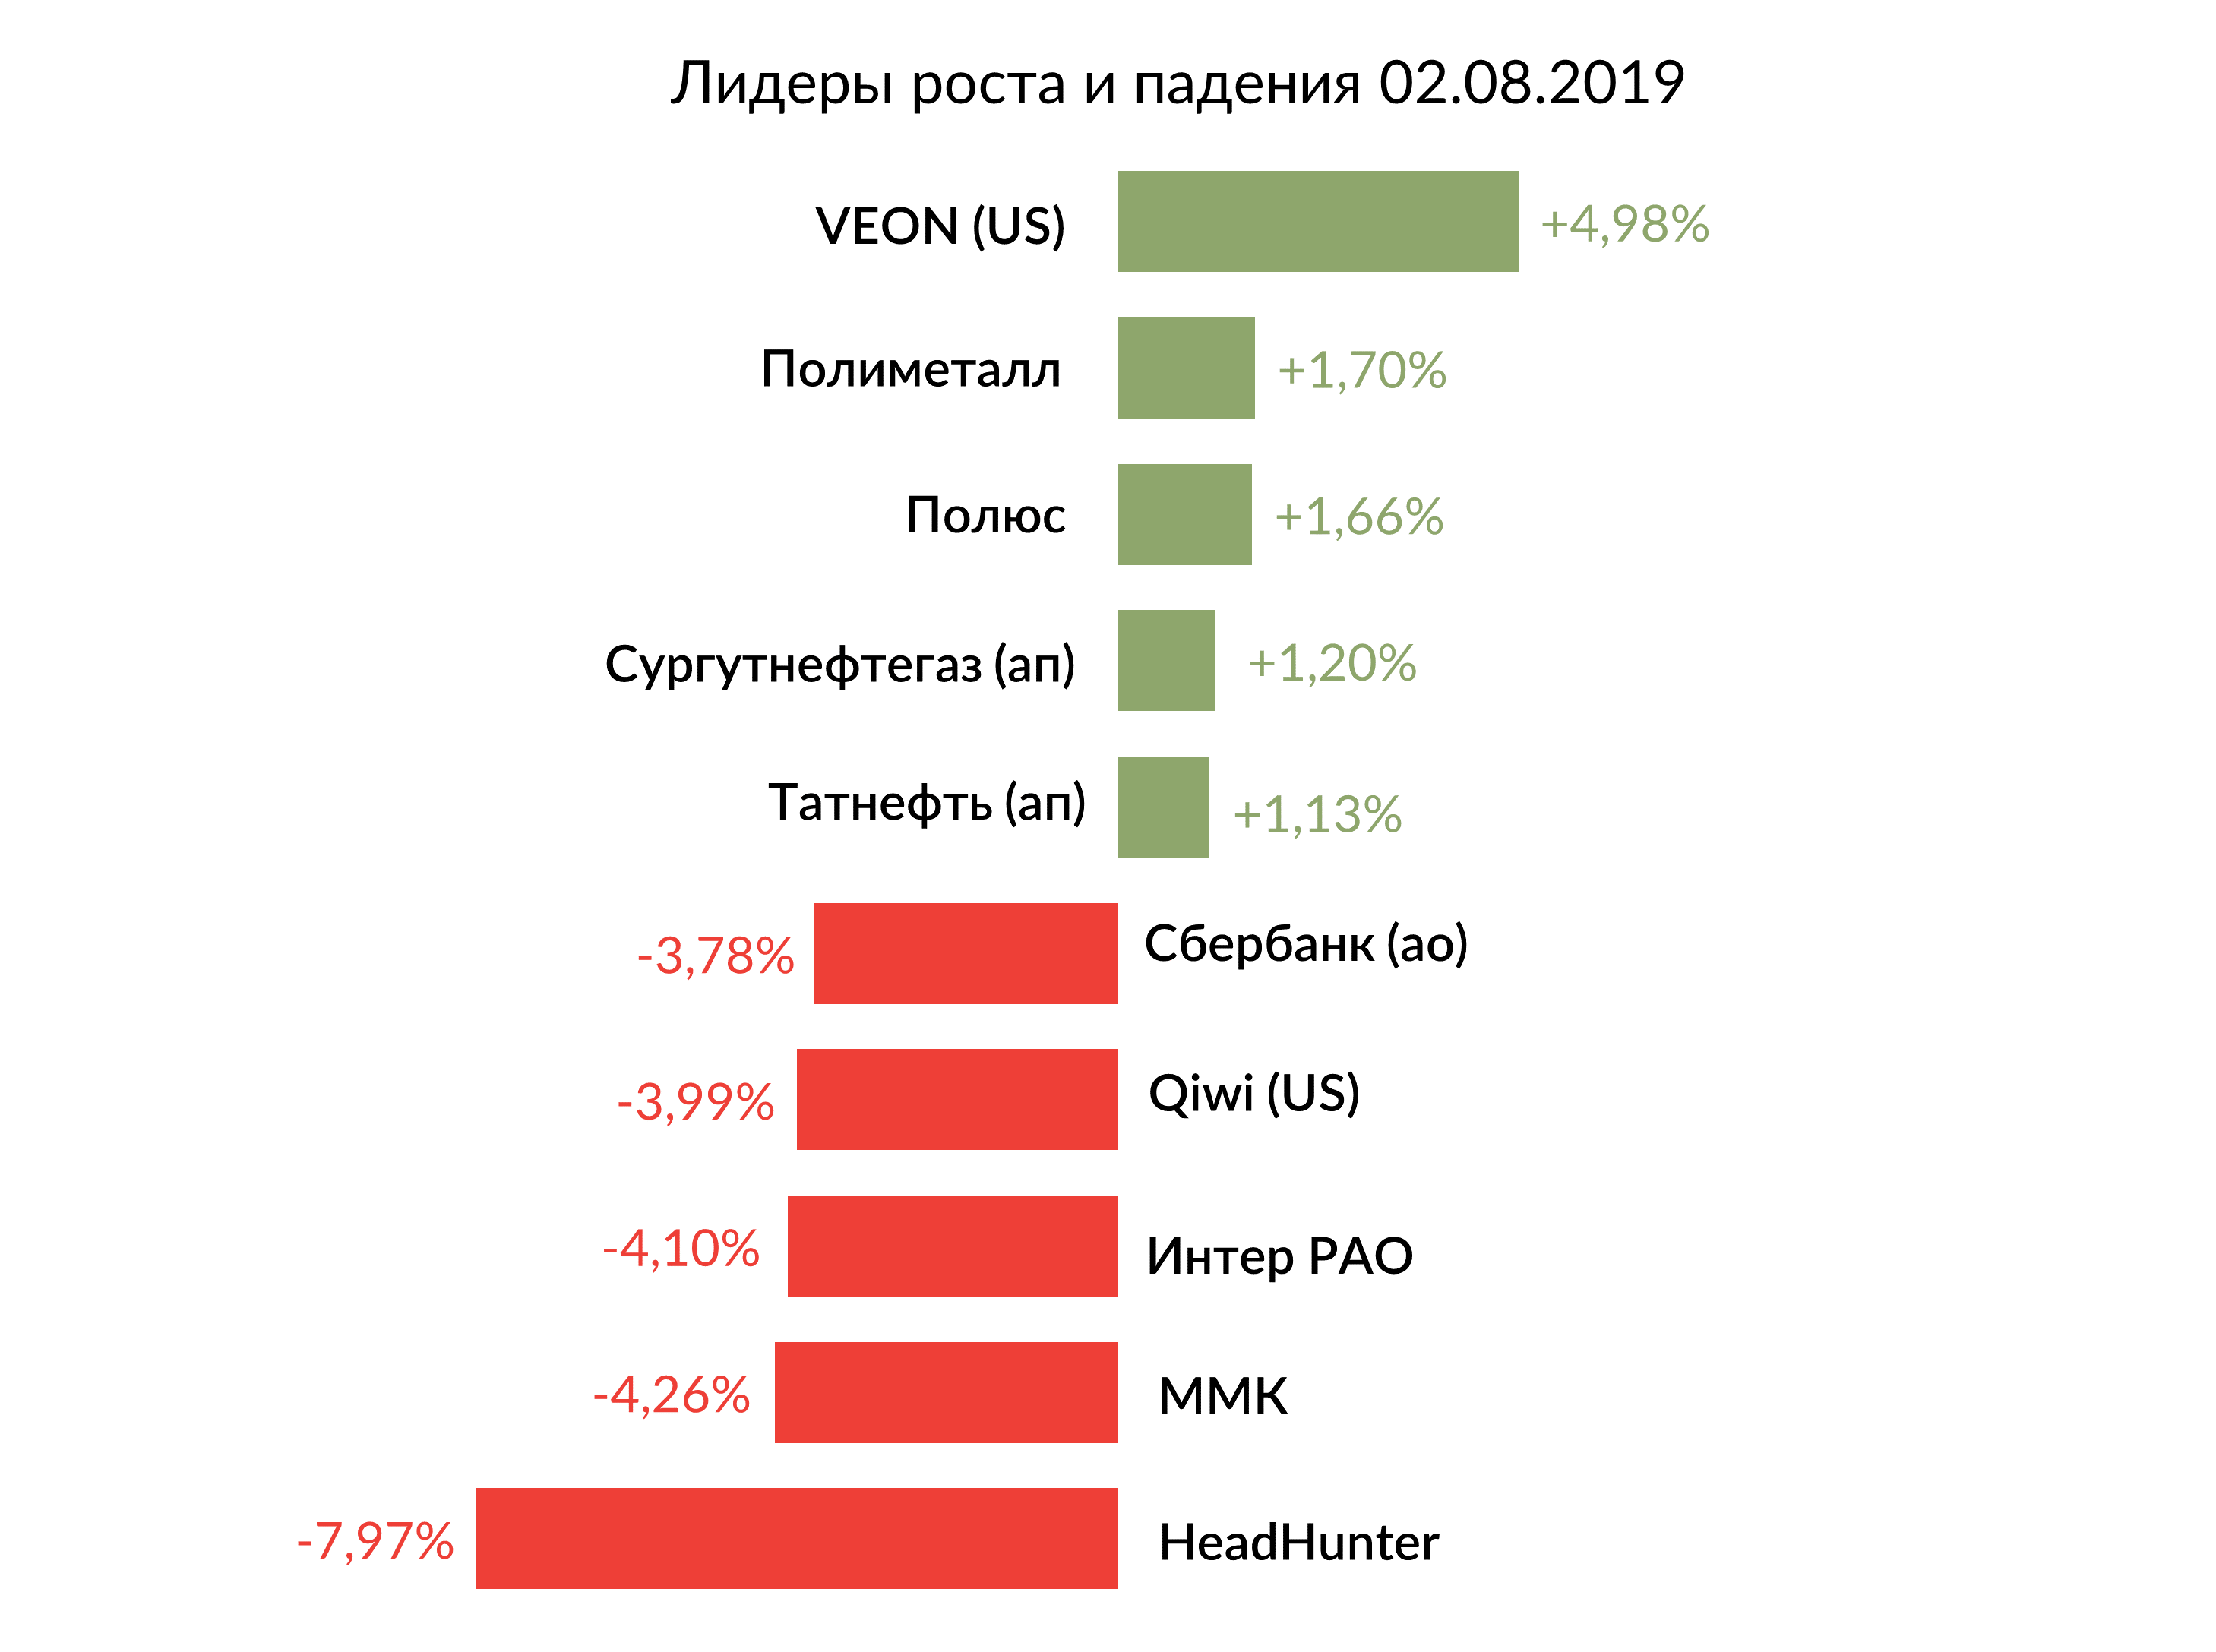 Лидеры роста и падения российского рынка на 2 августа